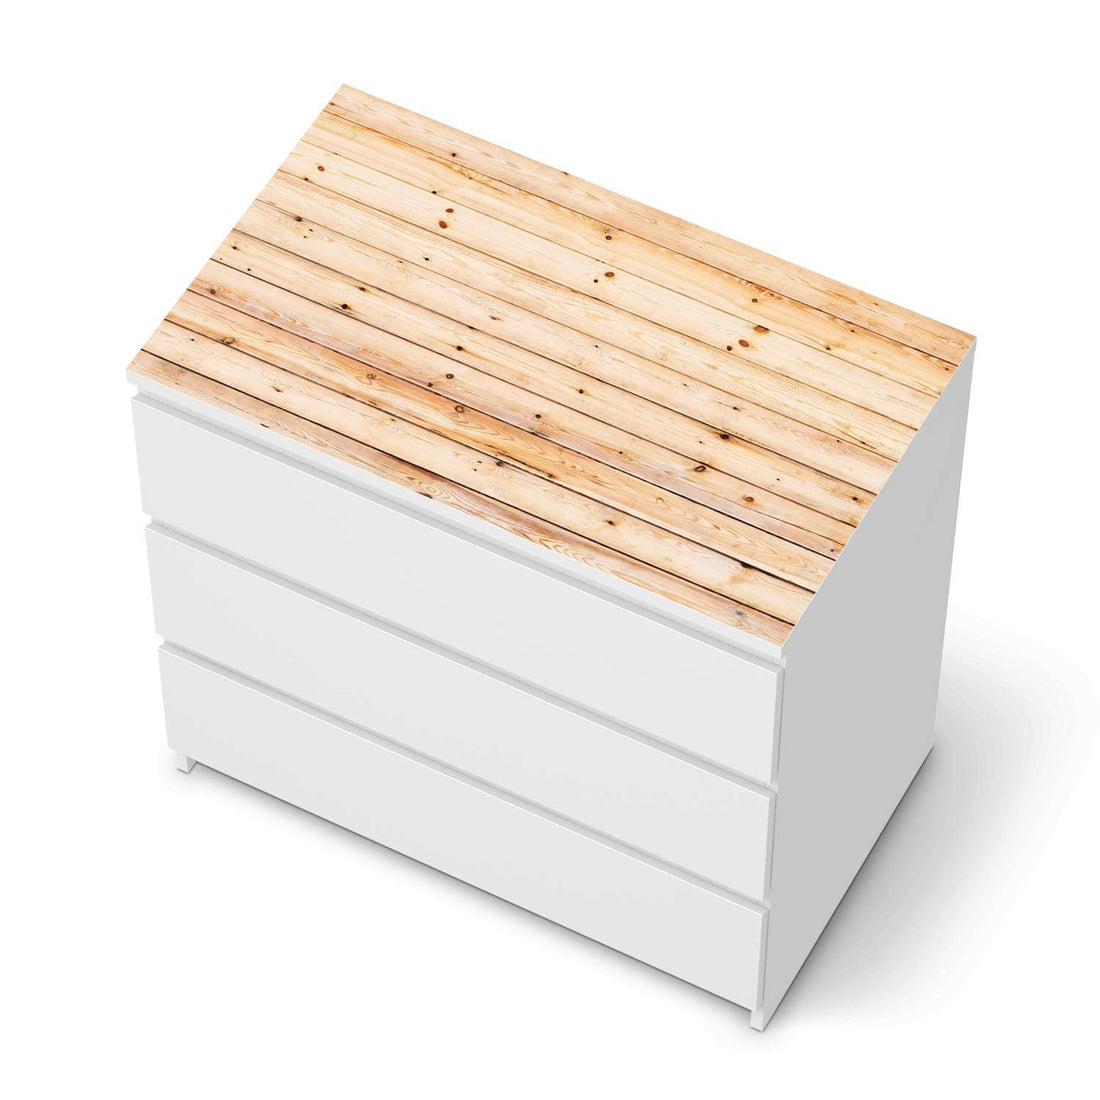 Möbelfolie Bright Planks - IKEA Malm Kommode 3 Schubladen [oben] - weiss